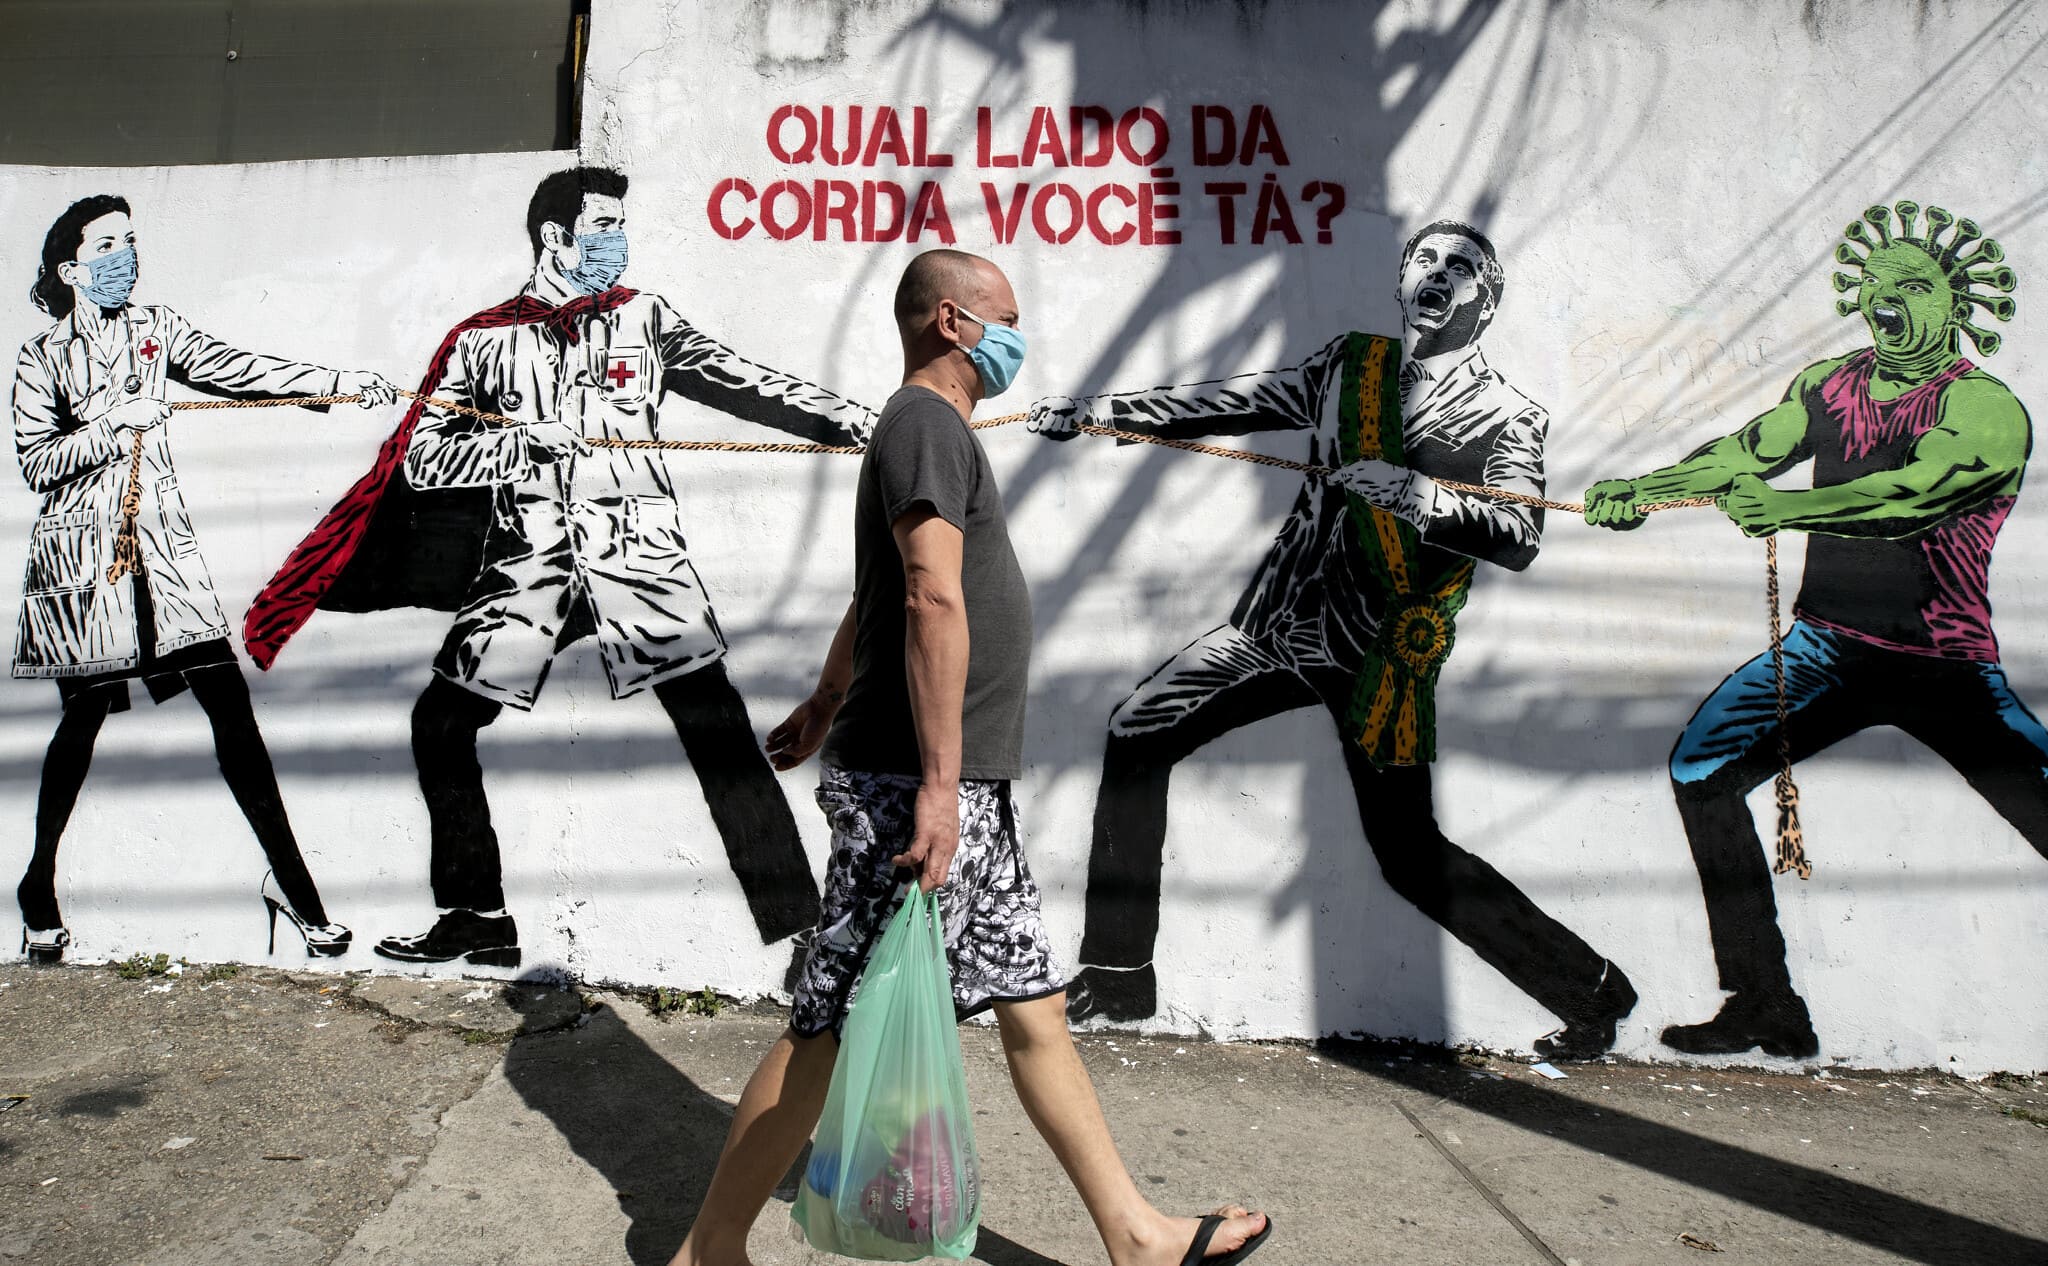 ציור קיר בברזיל המציג את הנשיא כמי שמסייע להתפשטות הקורונה, יוני 2020 (צילום: AP Photo/Leo Correa)